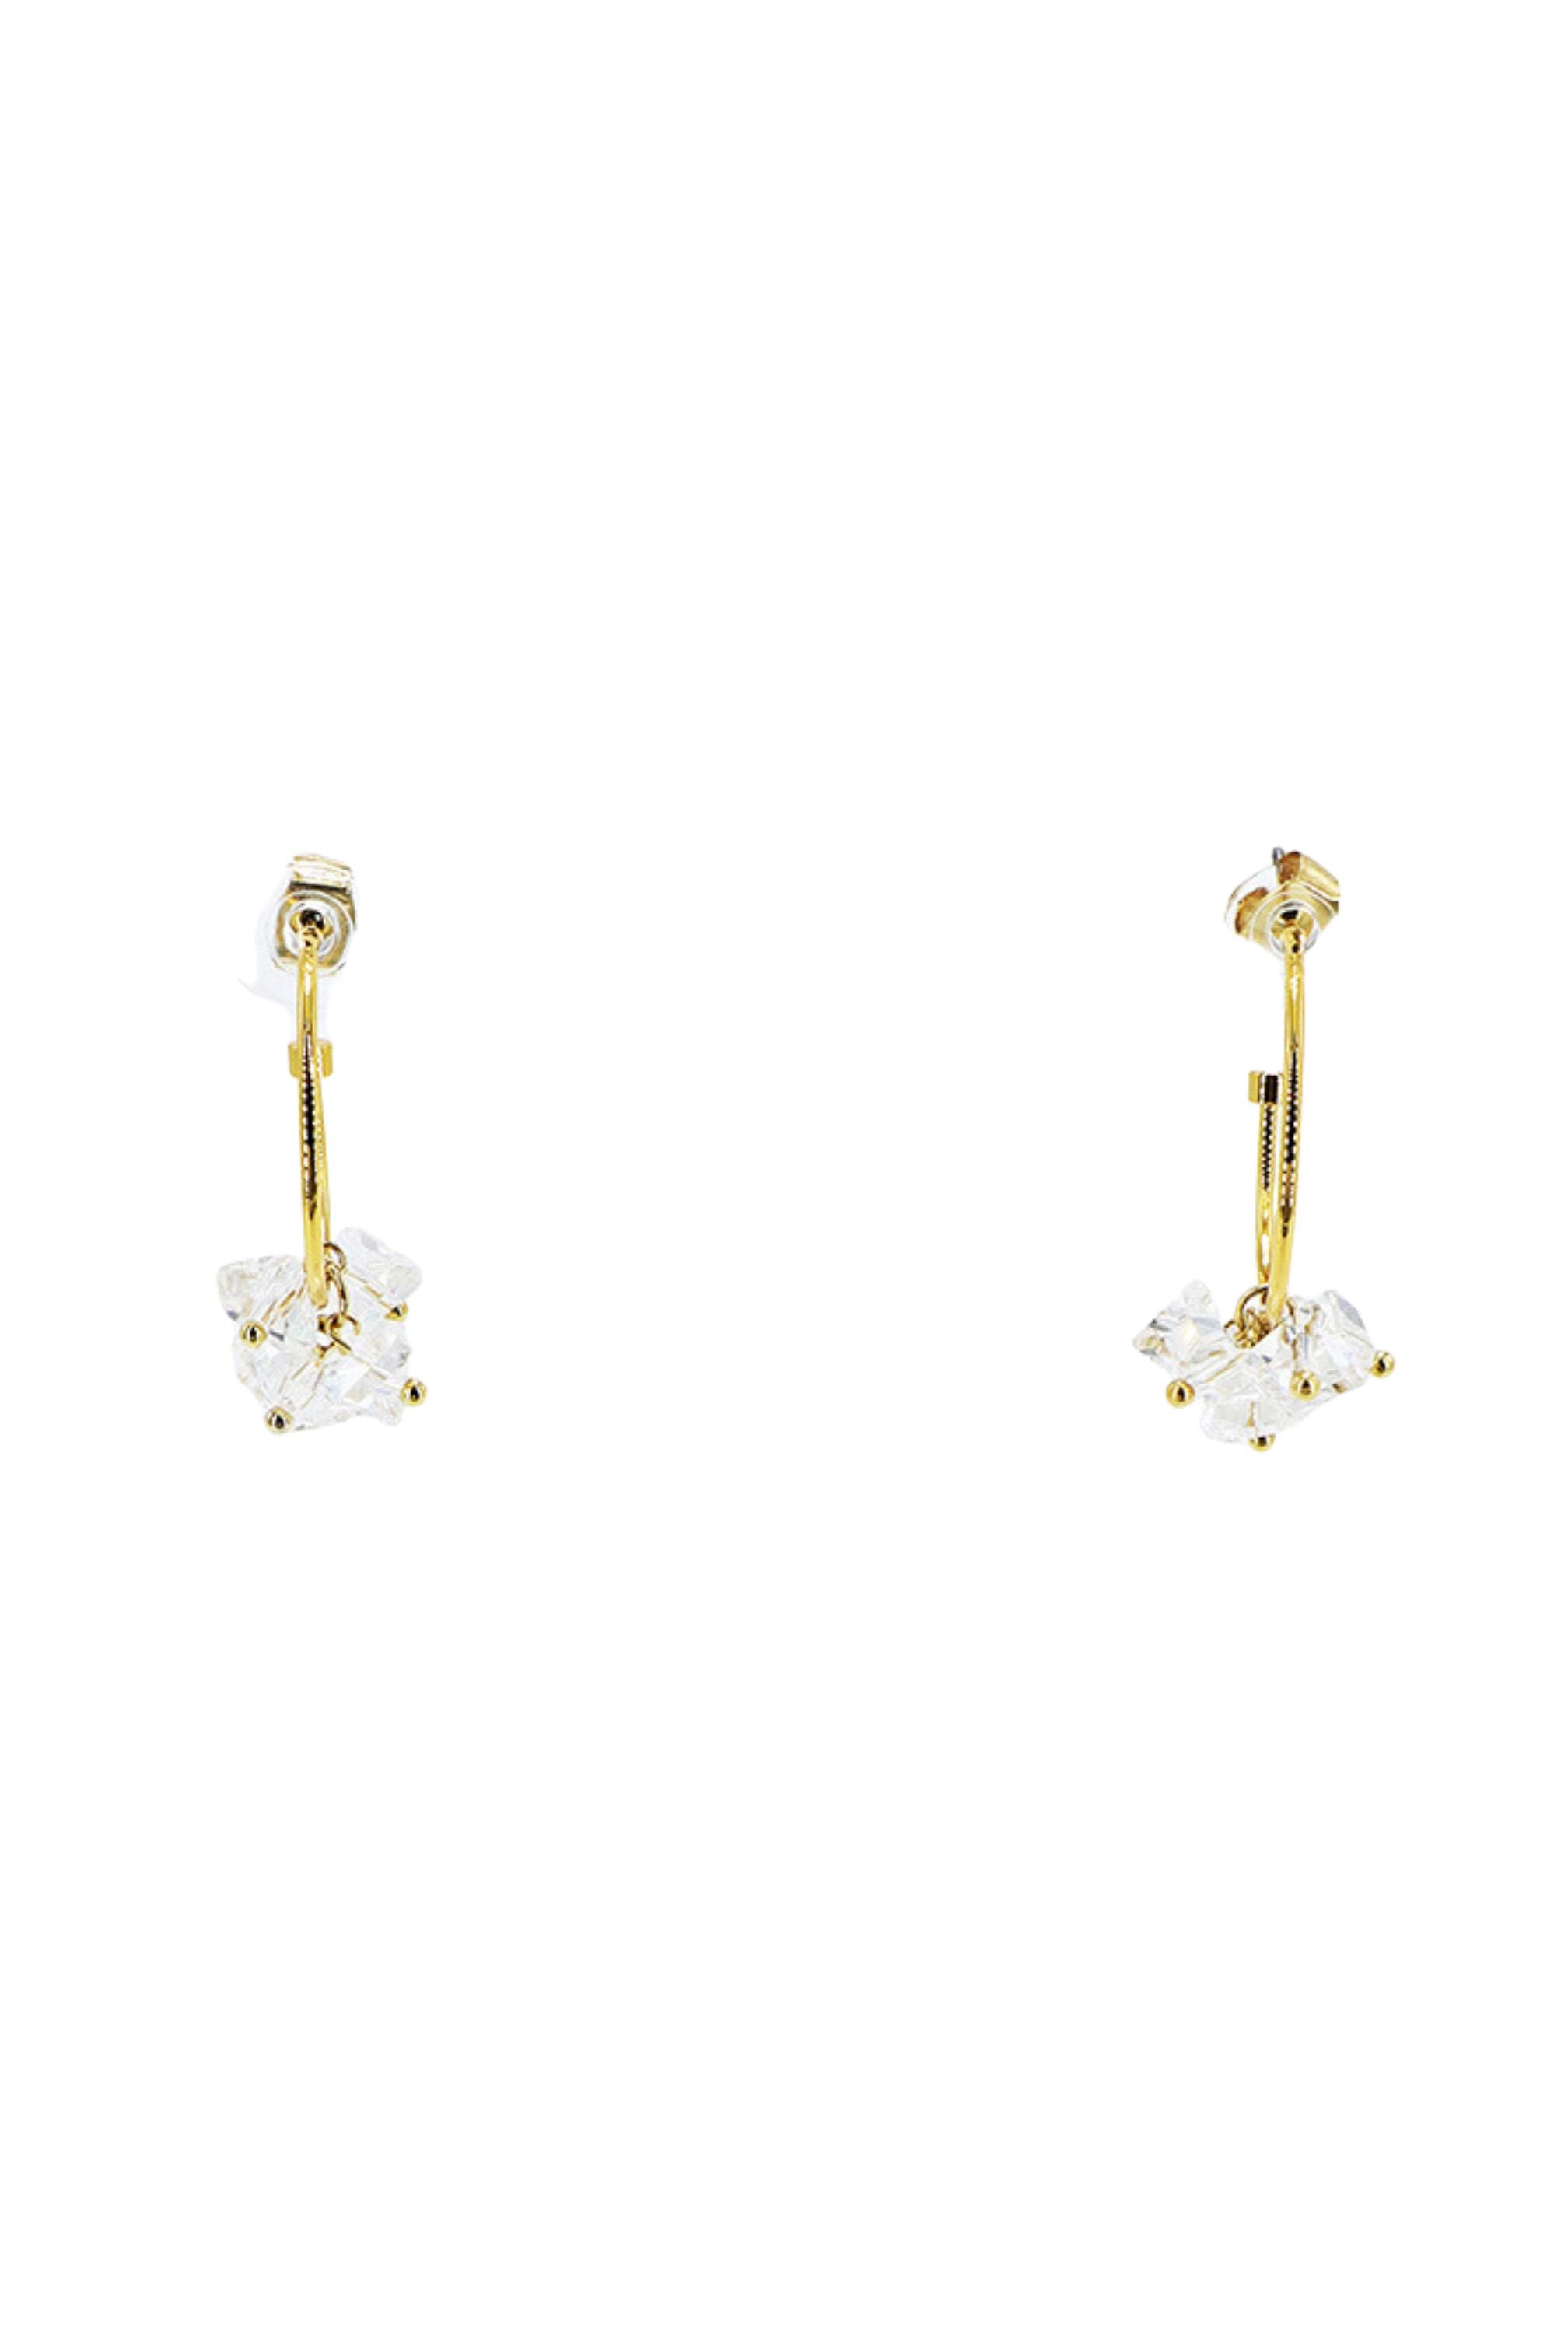 Gold drop earrings